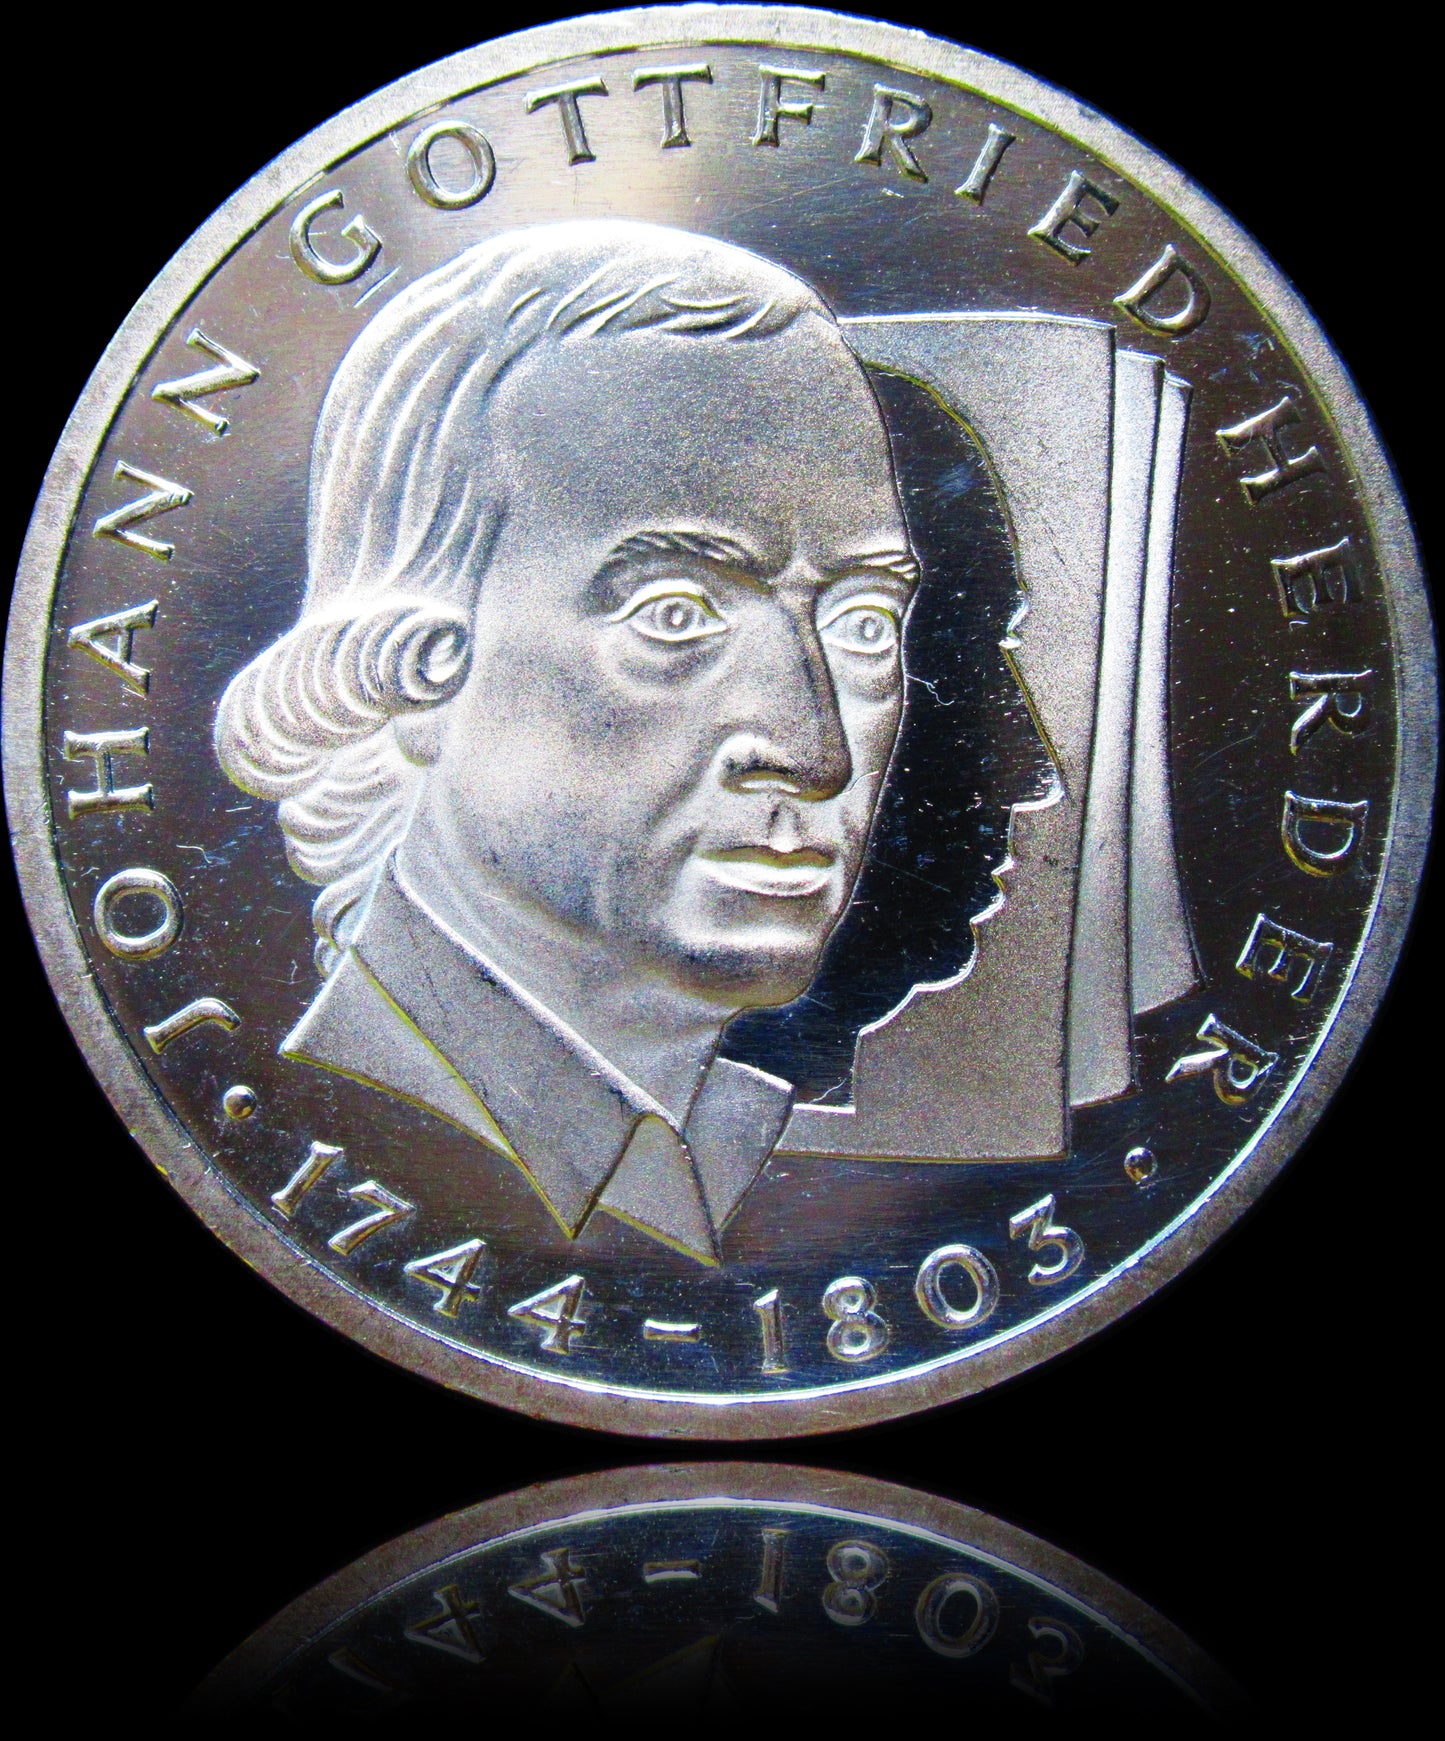 JOHANN GOTTFRIED HERDER, series 10 DM silver coin, 1994